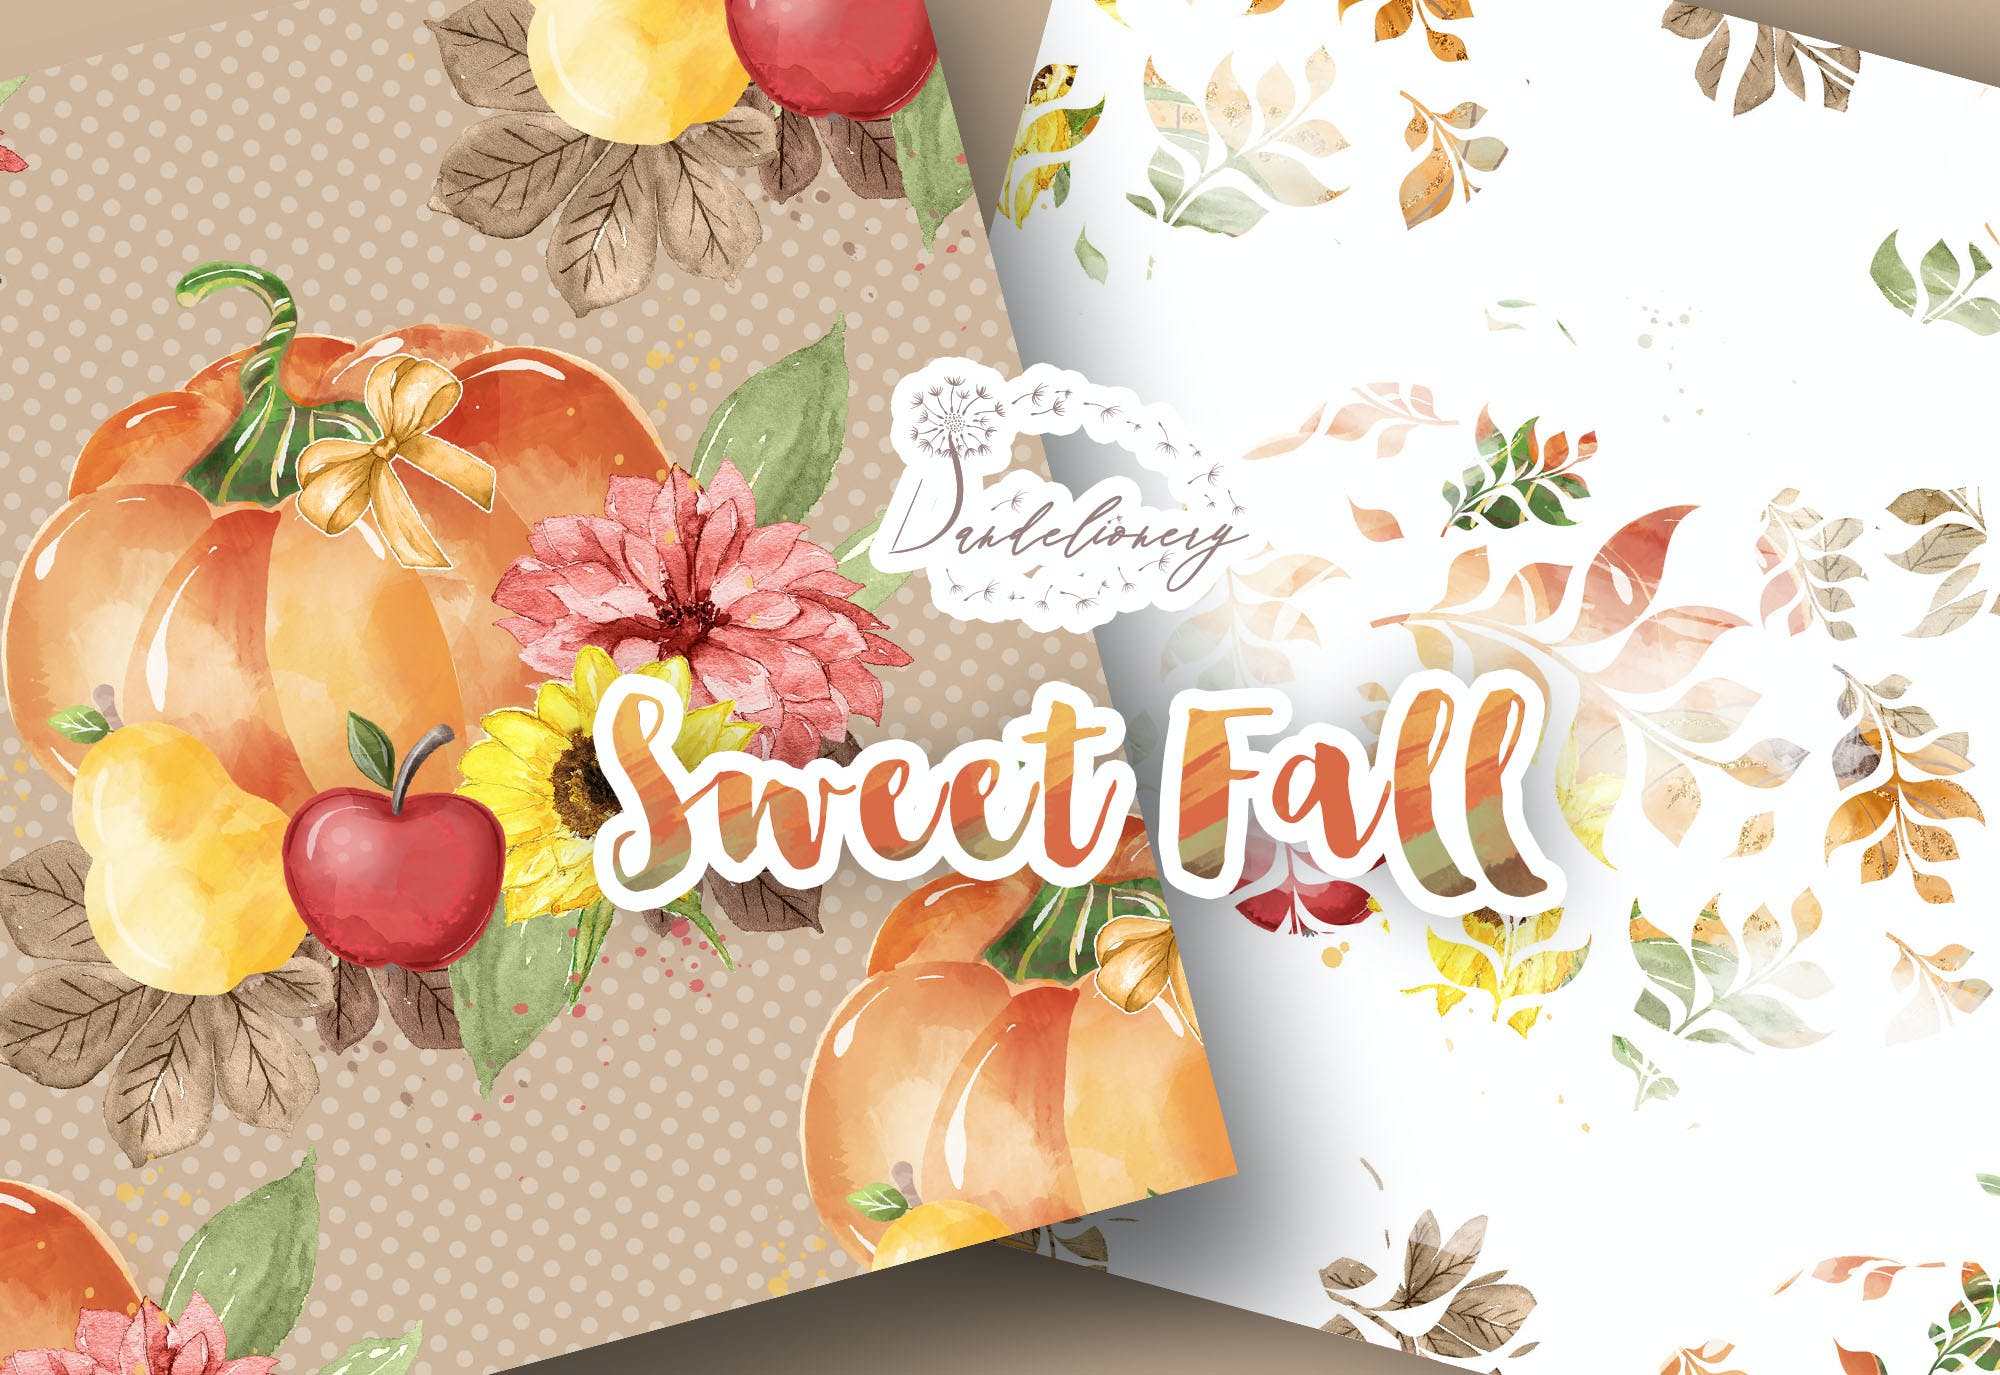 水彩秋天南瓜图案背景素材包 Sweet Fall Pumpkin digital paper pack设计素材模板